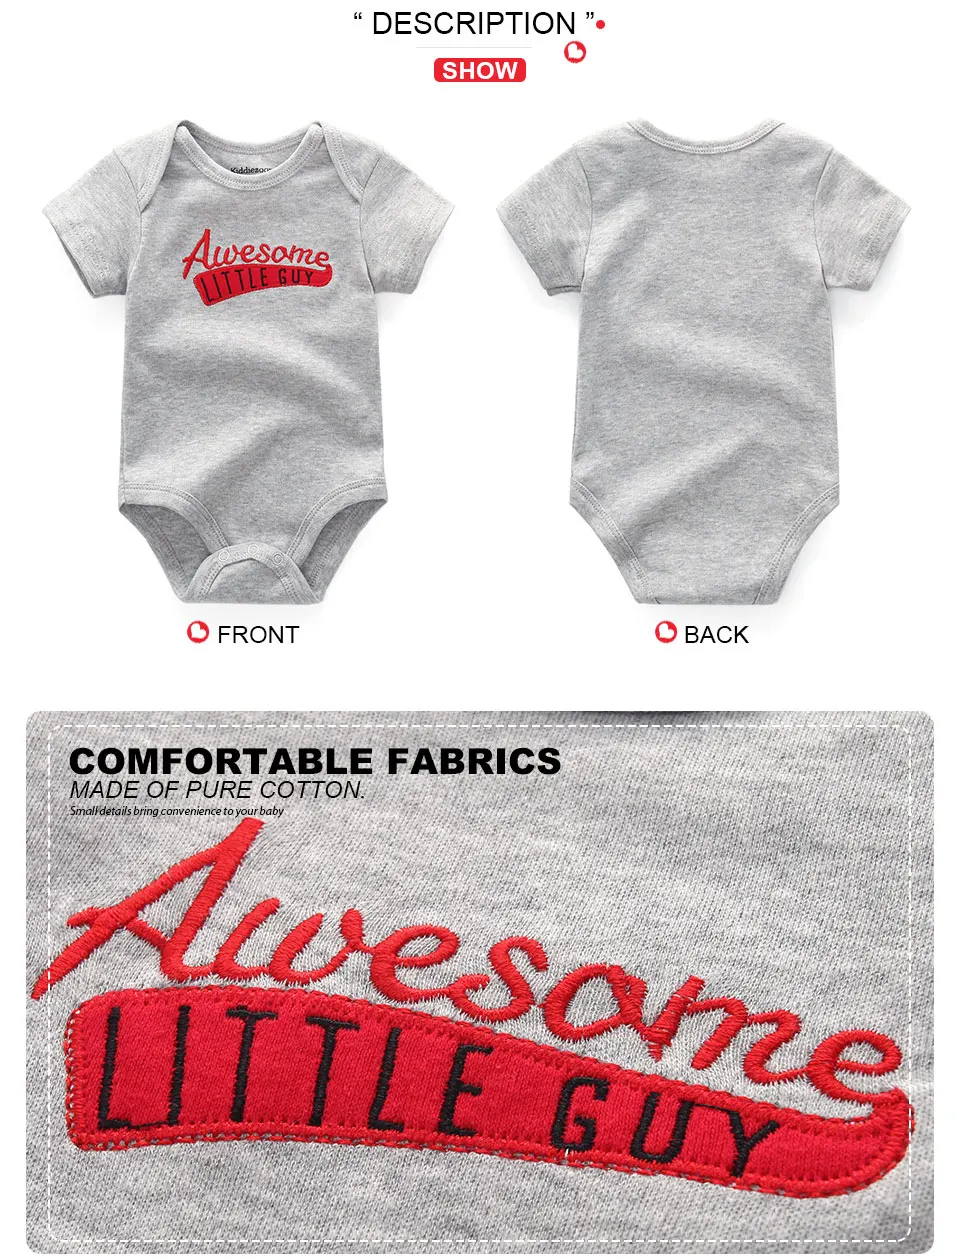 6 шт./лот, одежда для маленьких мальчиков с изображением единорога хлопковая детская одежда комбинезоны для новорожденных от 3 до 12 месяцев, одежда для маленьких девочек roupa de bebe